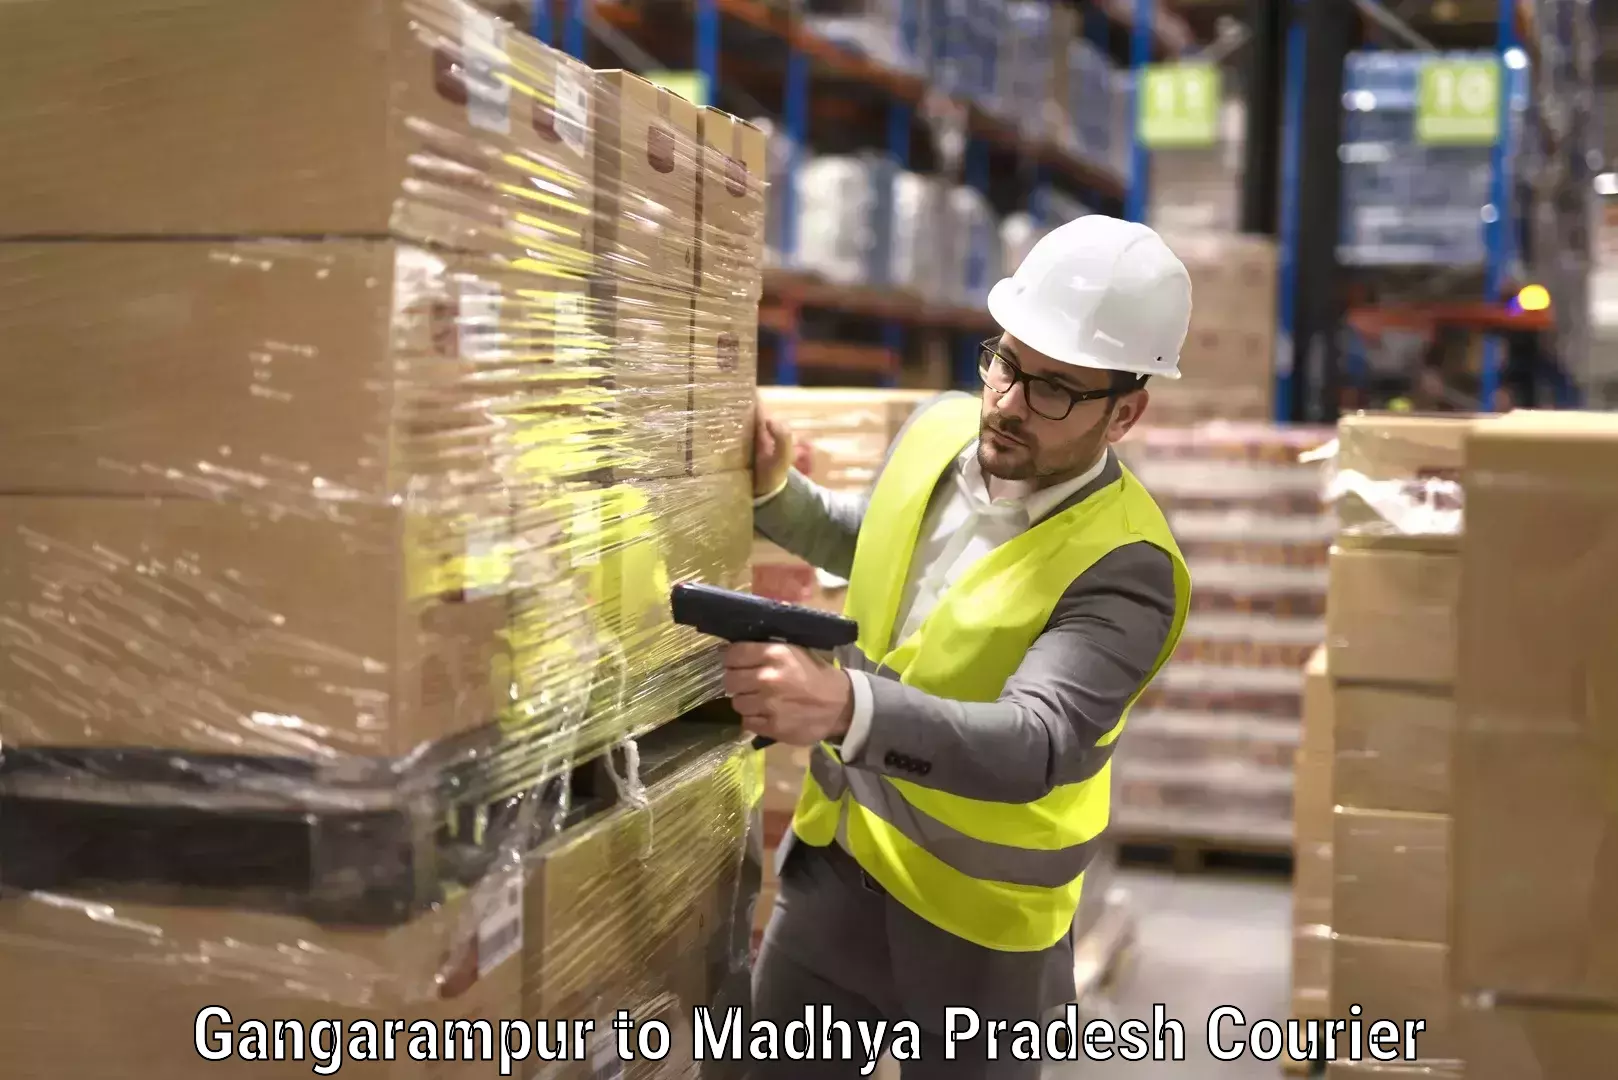 Home moving experts Gangarampur to Madhya Pradesh